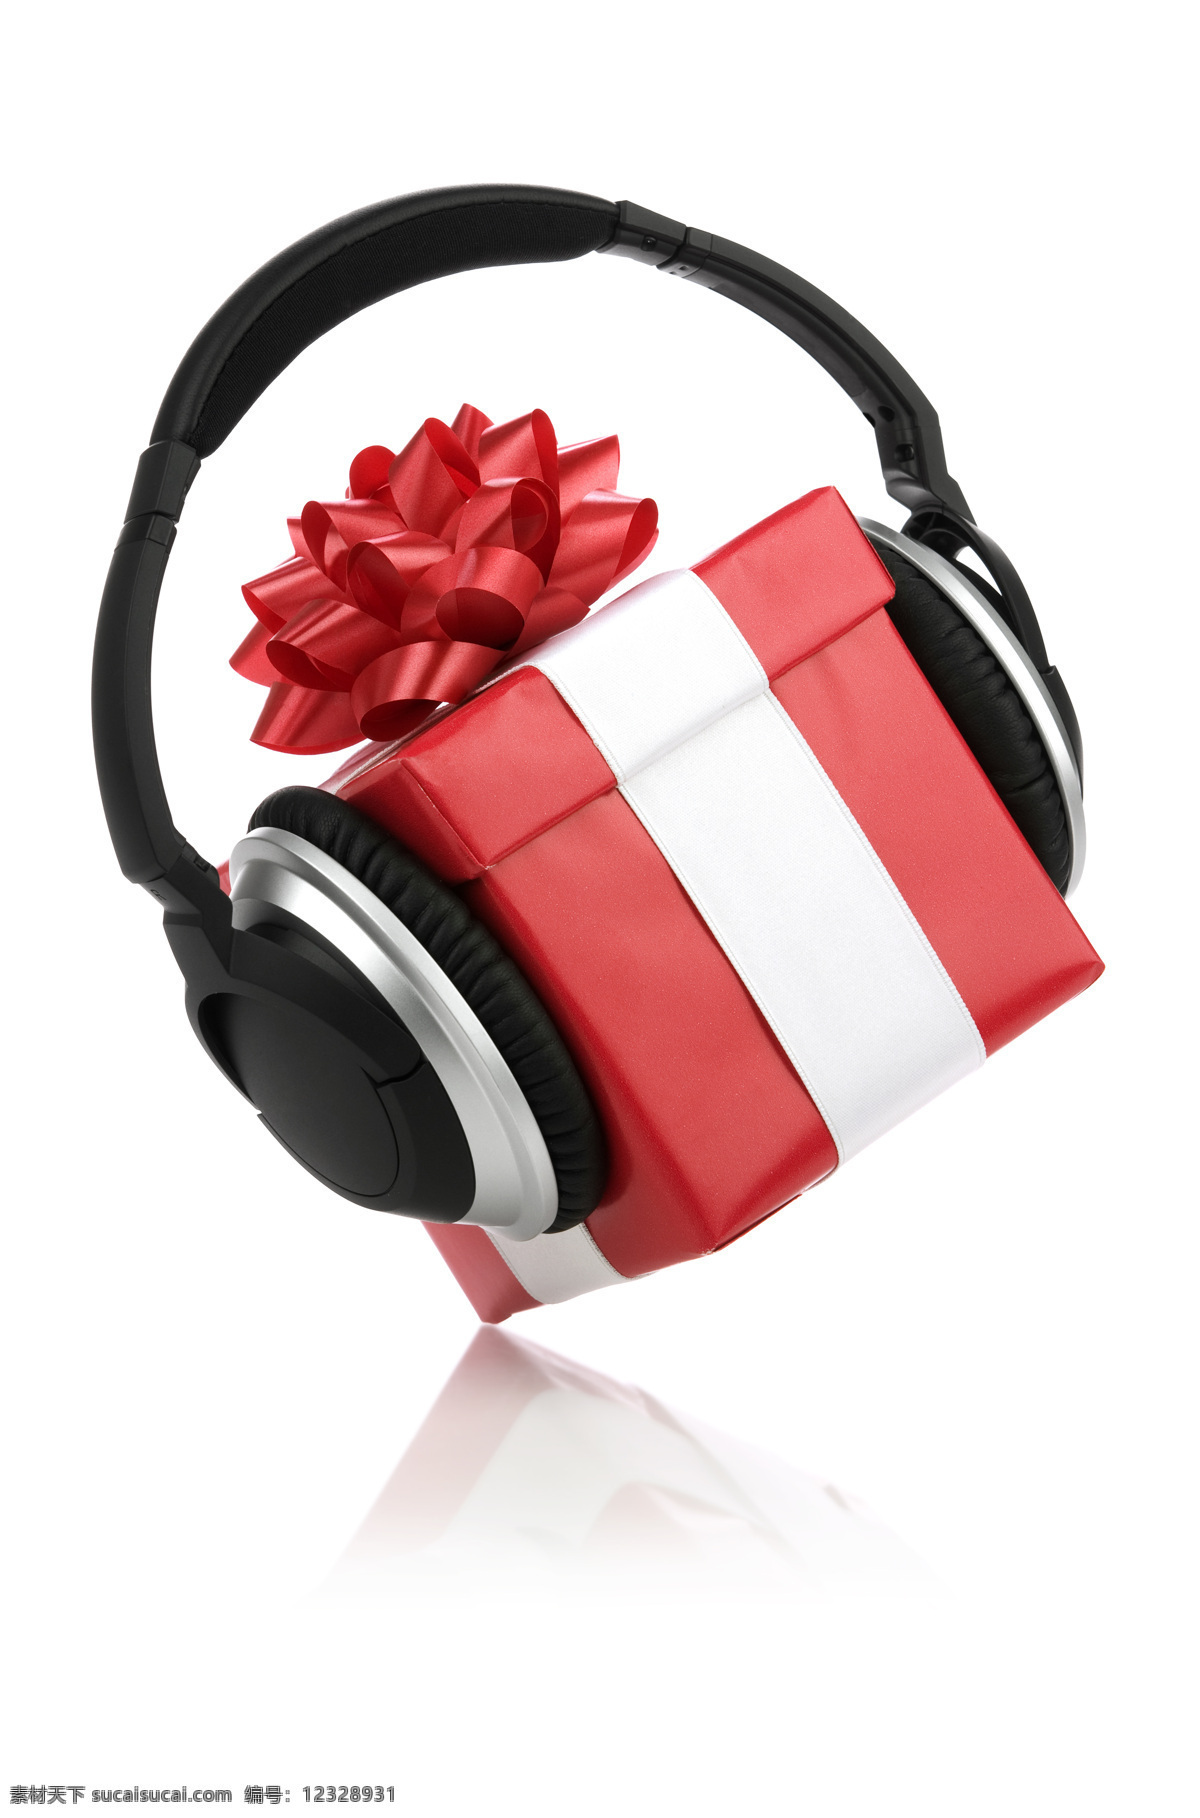 戴耳机的礼盒 耳机 耳机摄影 耳机素材 音乐 礼盒 礼物 礼品 影音娱乐 生活百科 白色